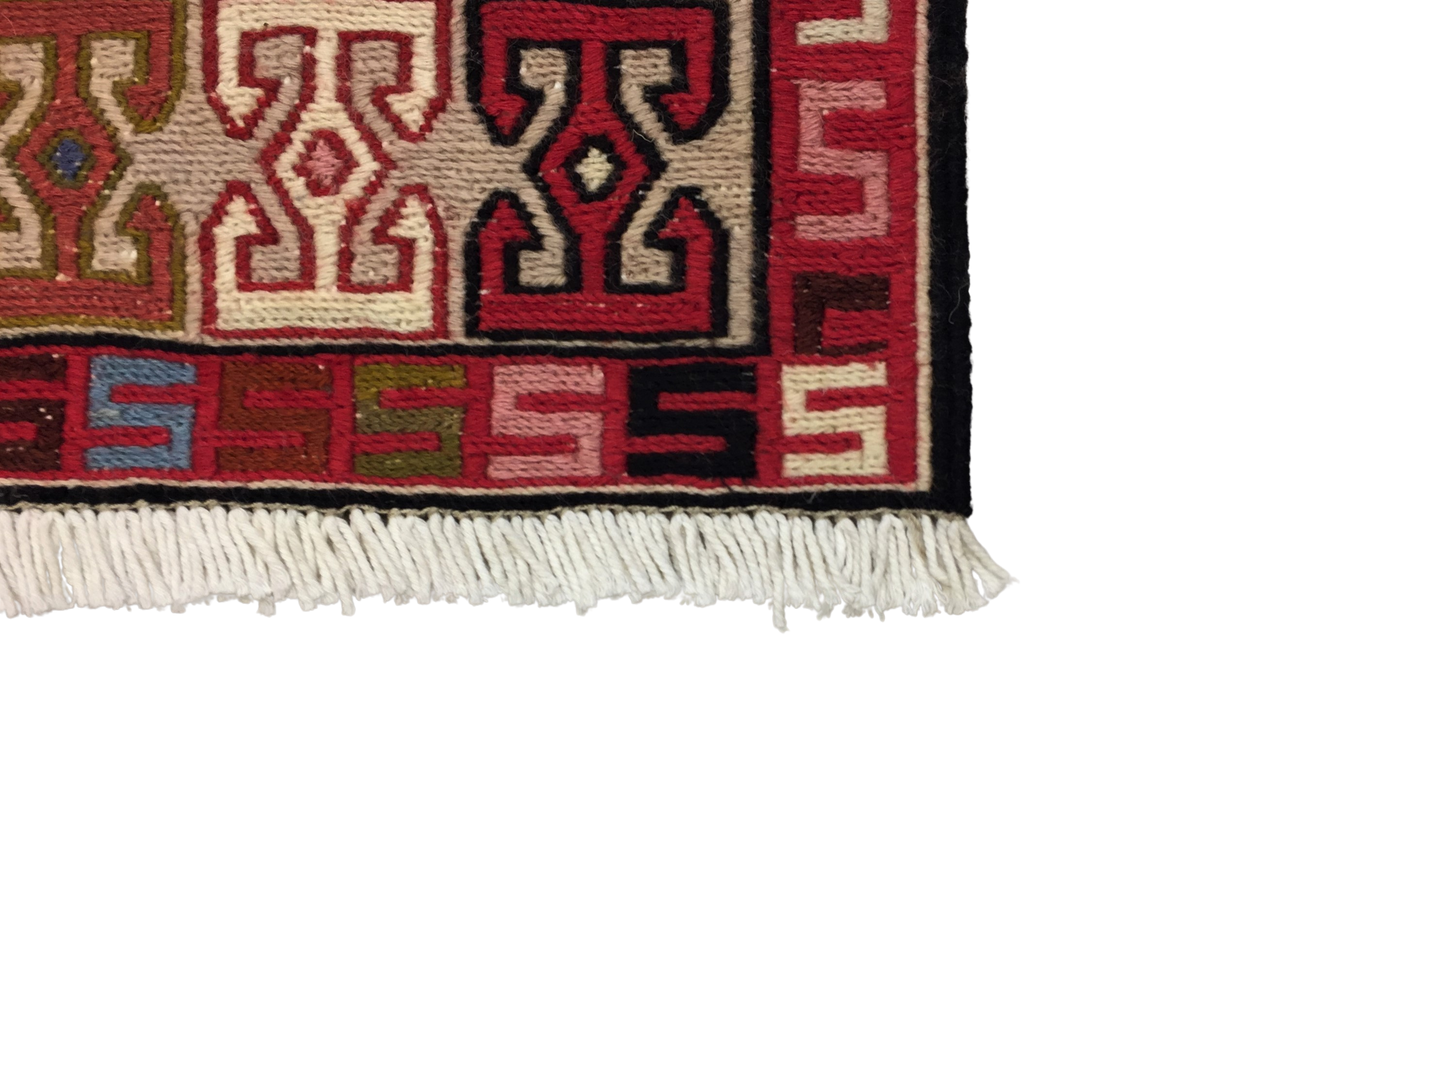 Carpet Sumak 74 X 300 cm - Alfombras de Estambul -  Turkish Carpets - Alfombras de Estambul